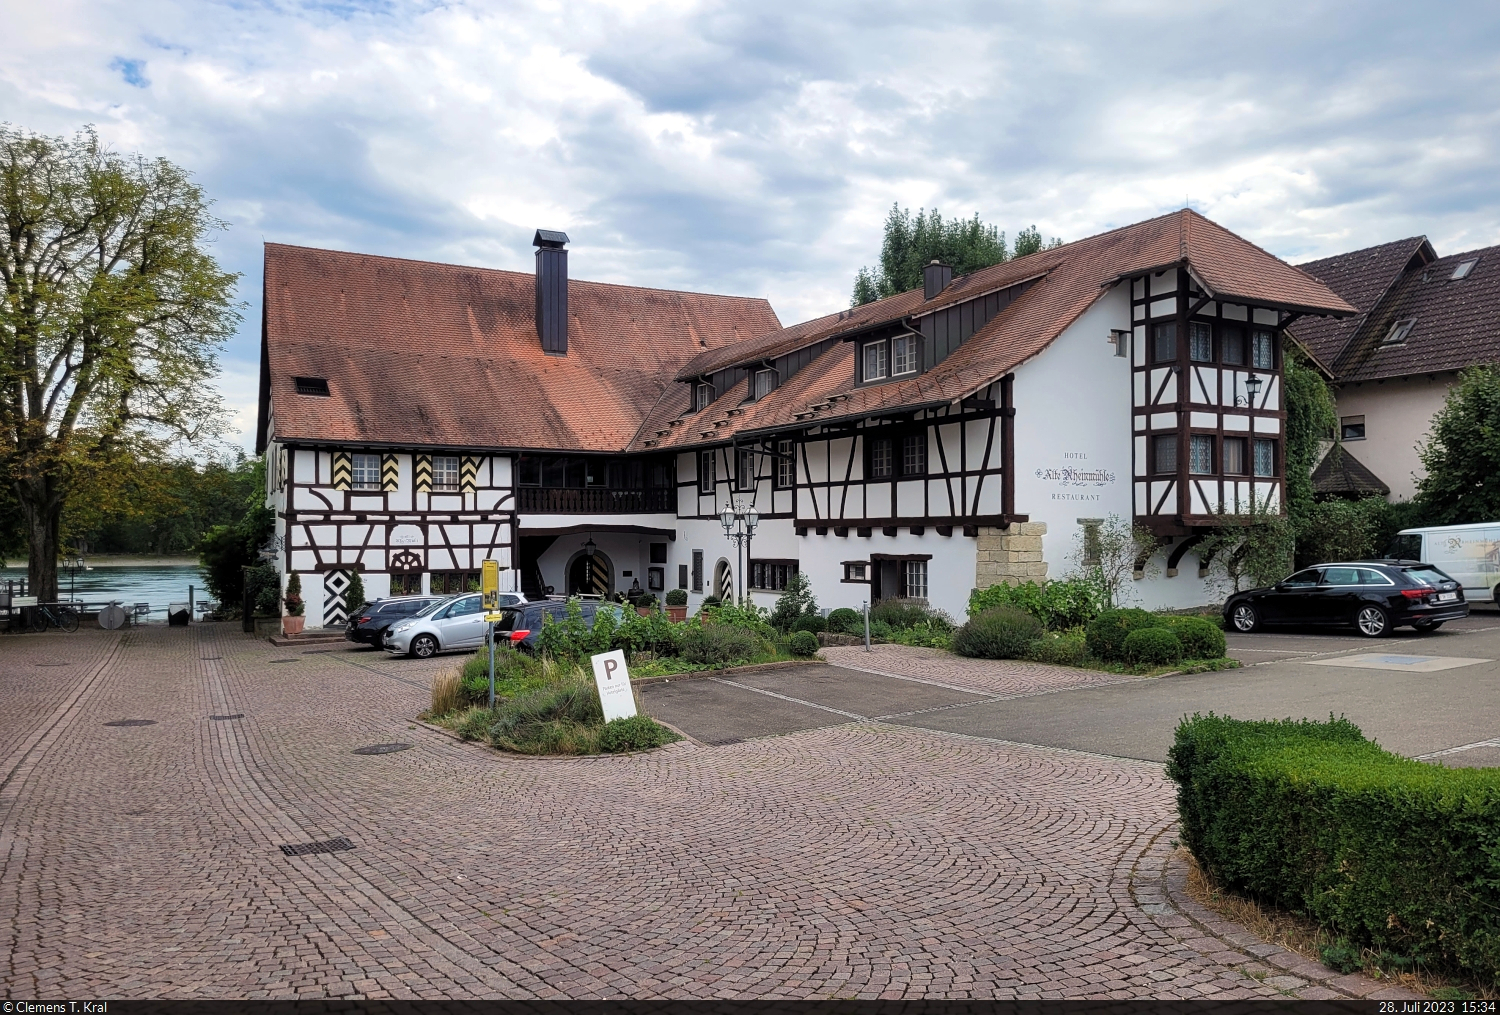 Bsingen am Hochrhein ist eine deutsche Exklave und vollstndig von Schweizer Gebiet umgeben. Zu dem rund 1500 Einwohner starken Ort gehrt unter anderem das Hotel und Restaurant Alte Rheinmhle.

🕓 28.7.2023 | 15:34 Uhr